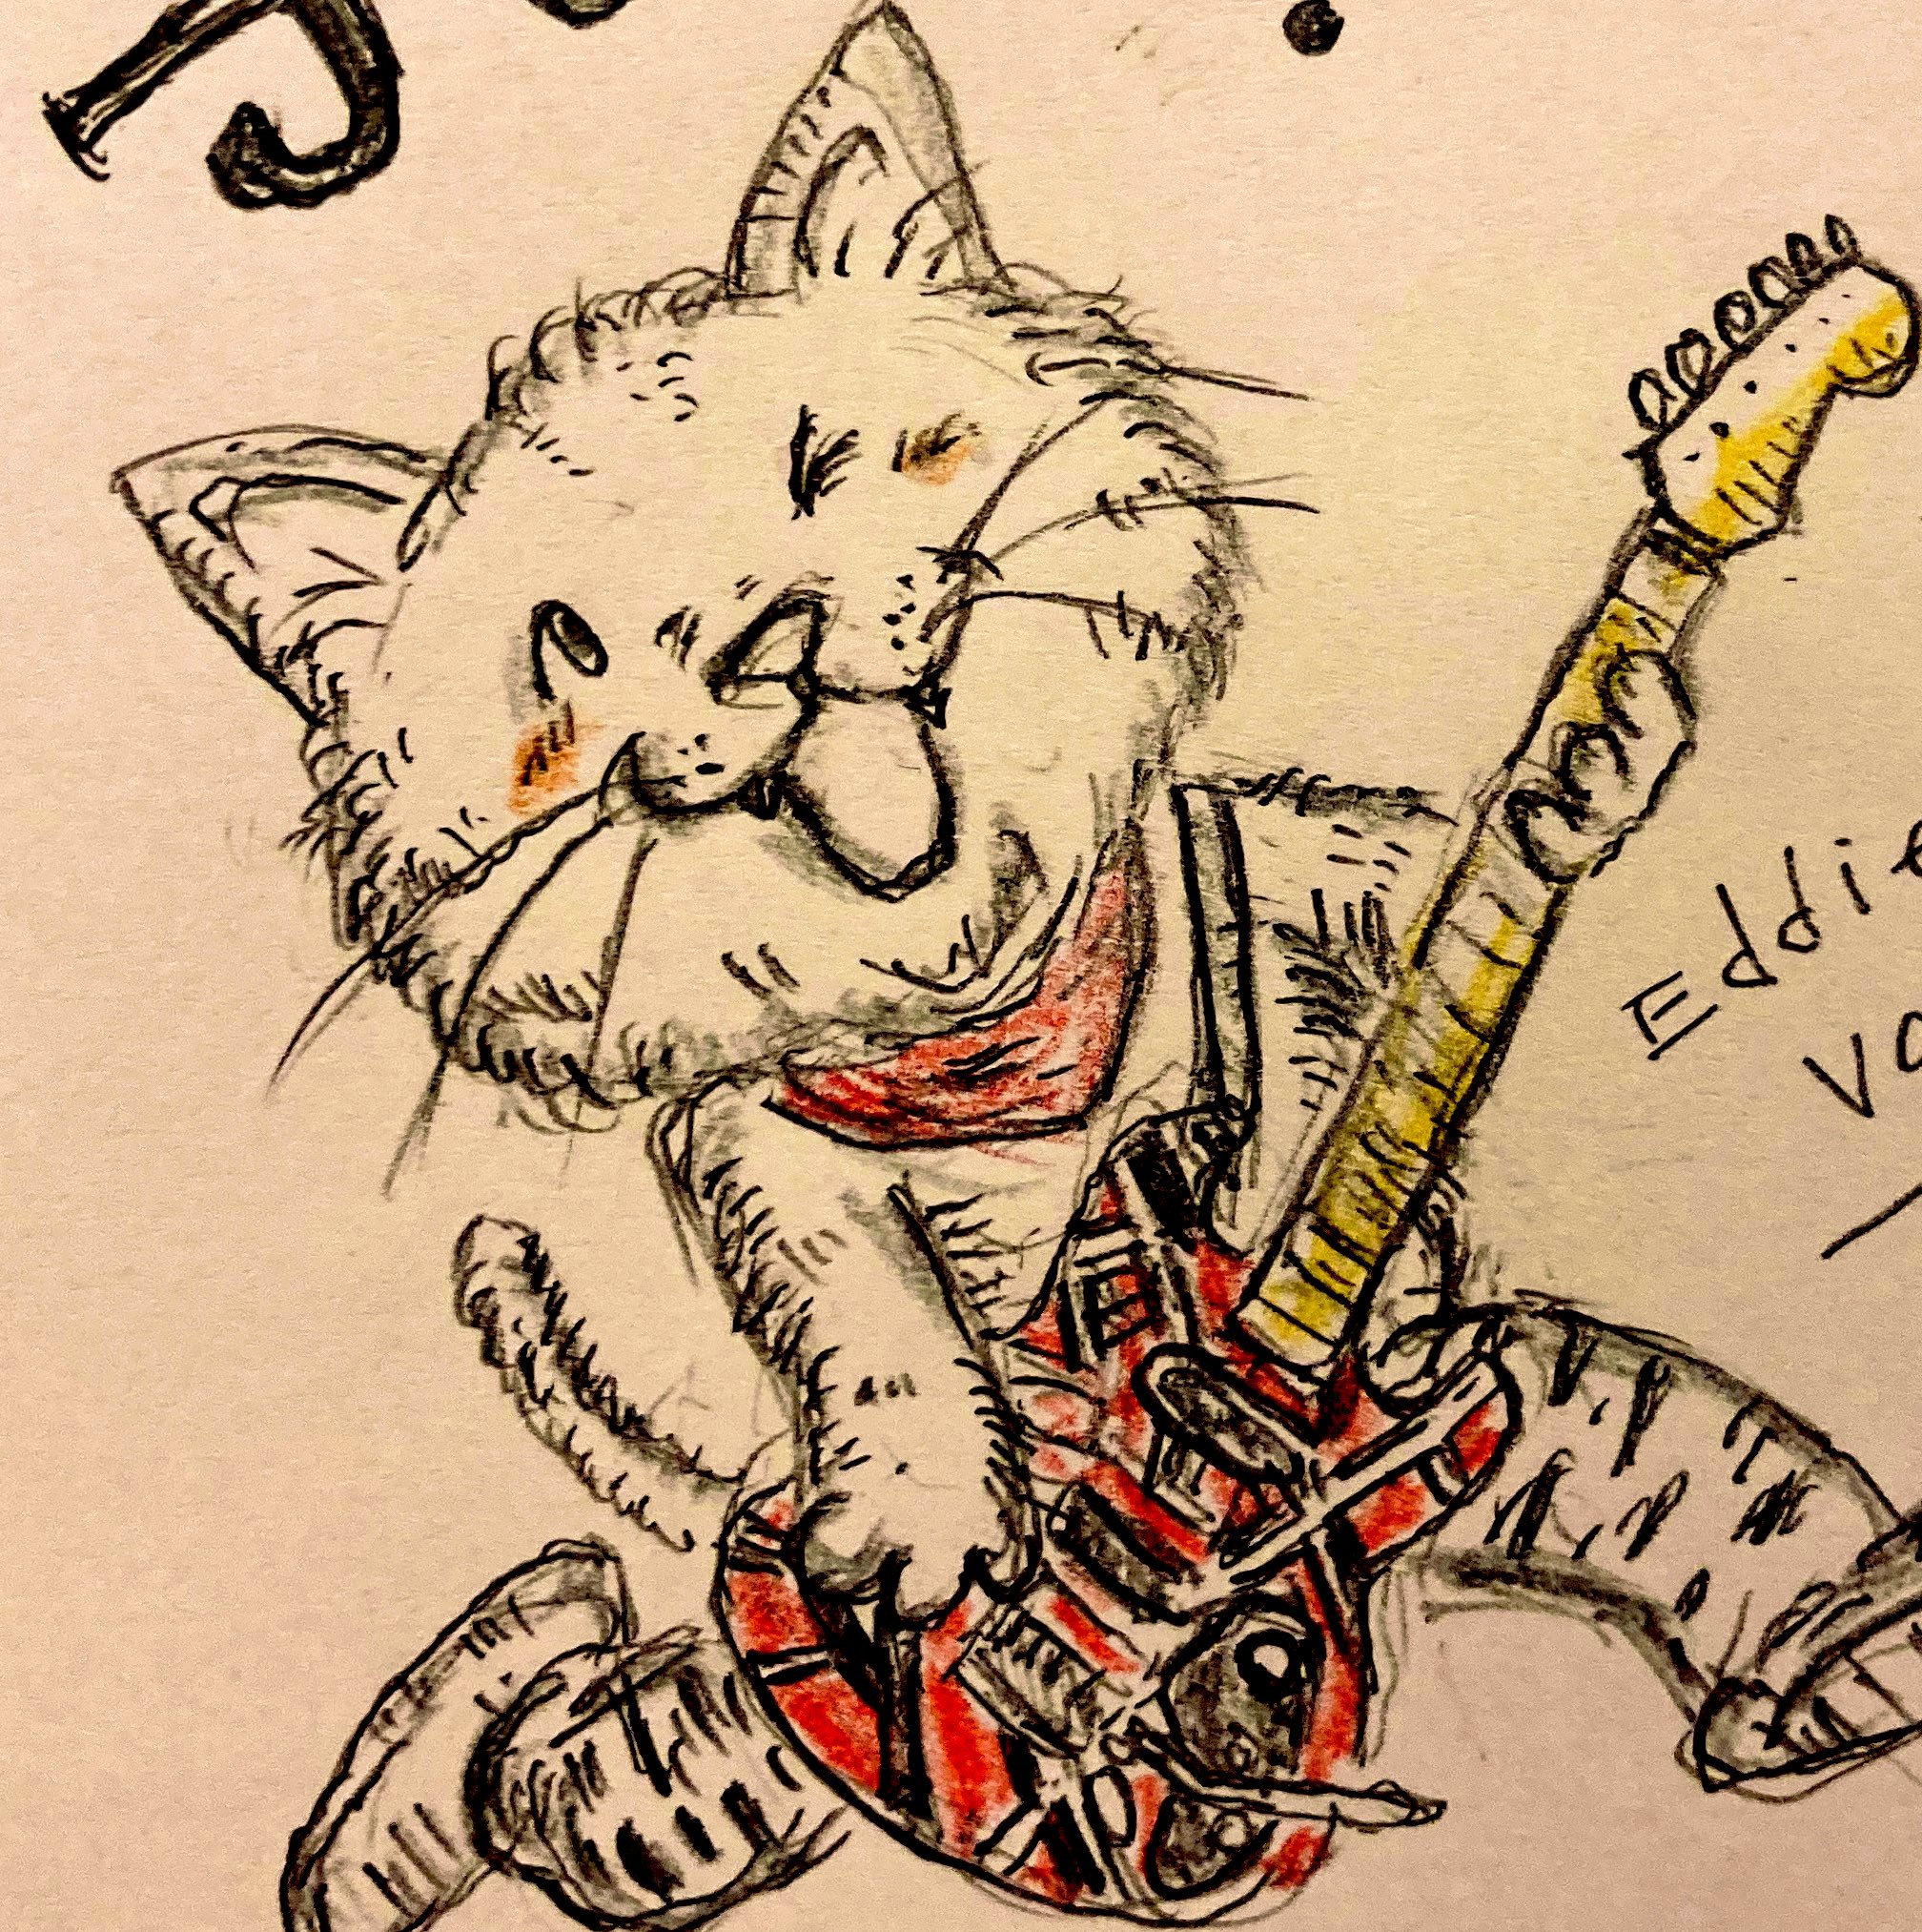 ねこしんぶん 最高のかっこいいギター演奏と笑顔をありがとう 安らかにおやすみ下さい イラスト アナログイラスト 猫 イラスト エディヴァンヘイレン Eddievanhalen T Co Fsytf5eh9r Twitter